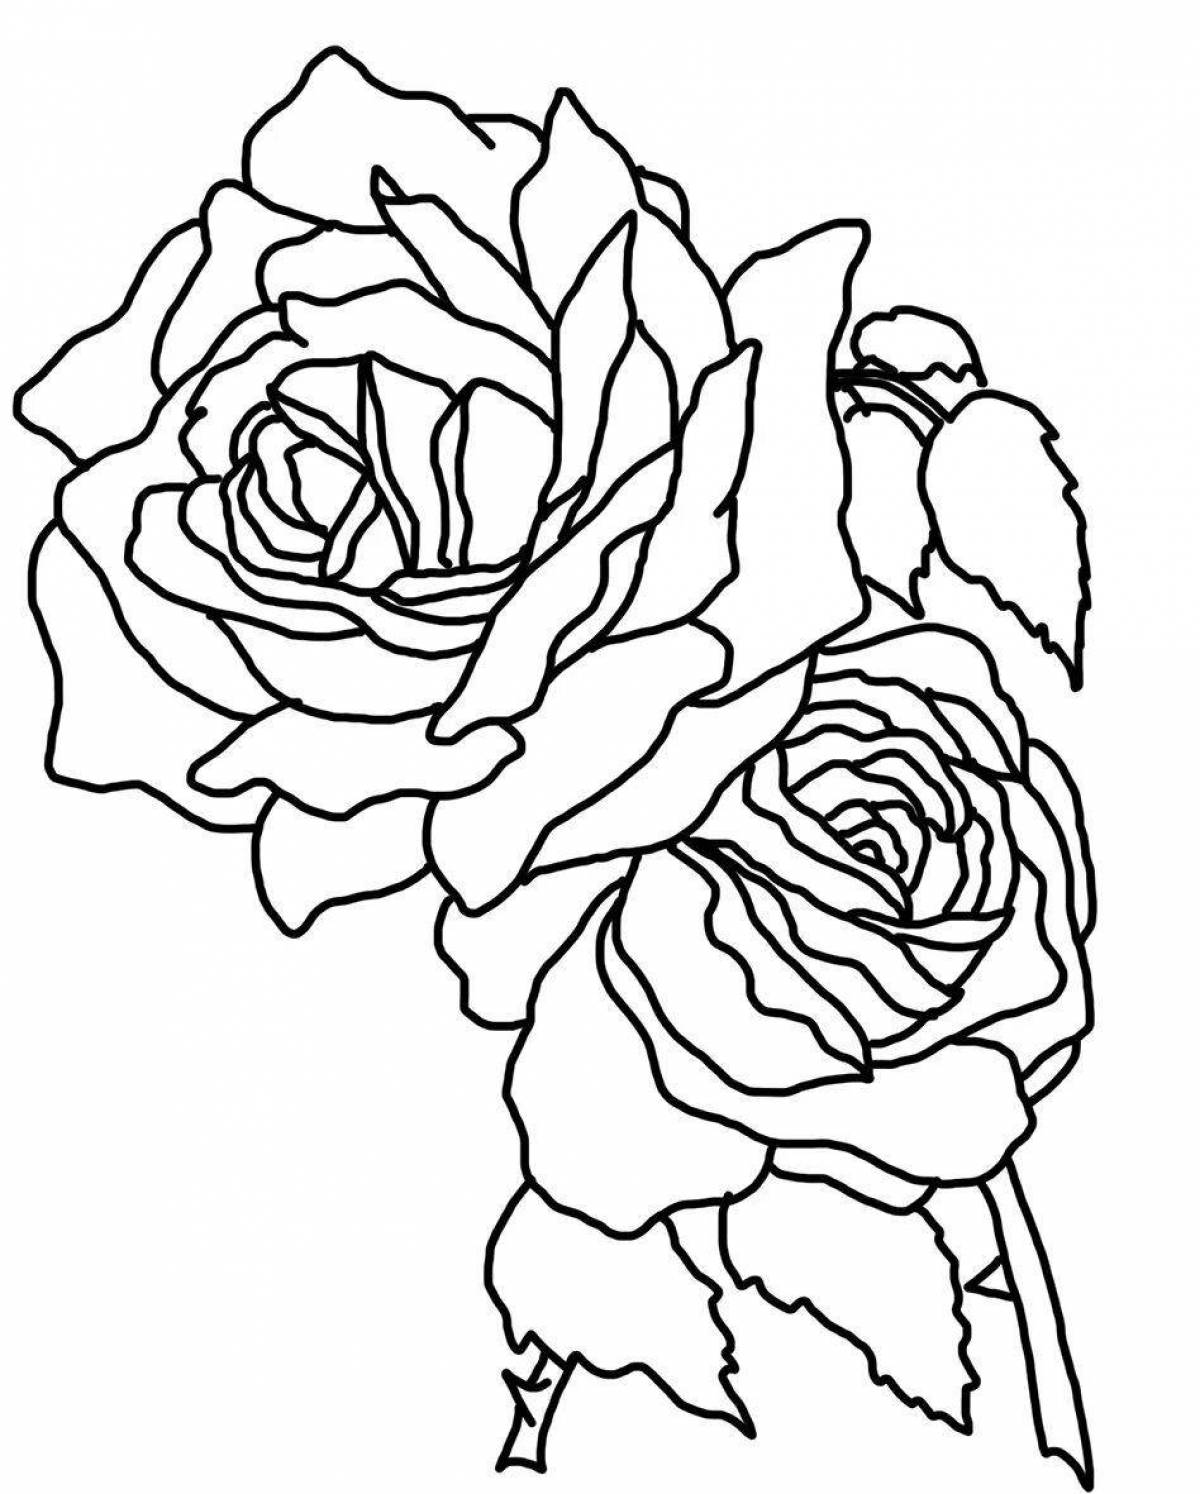 Сложная раскраска рисунок розы